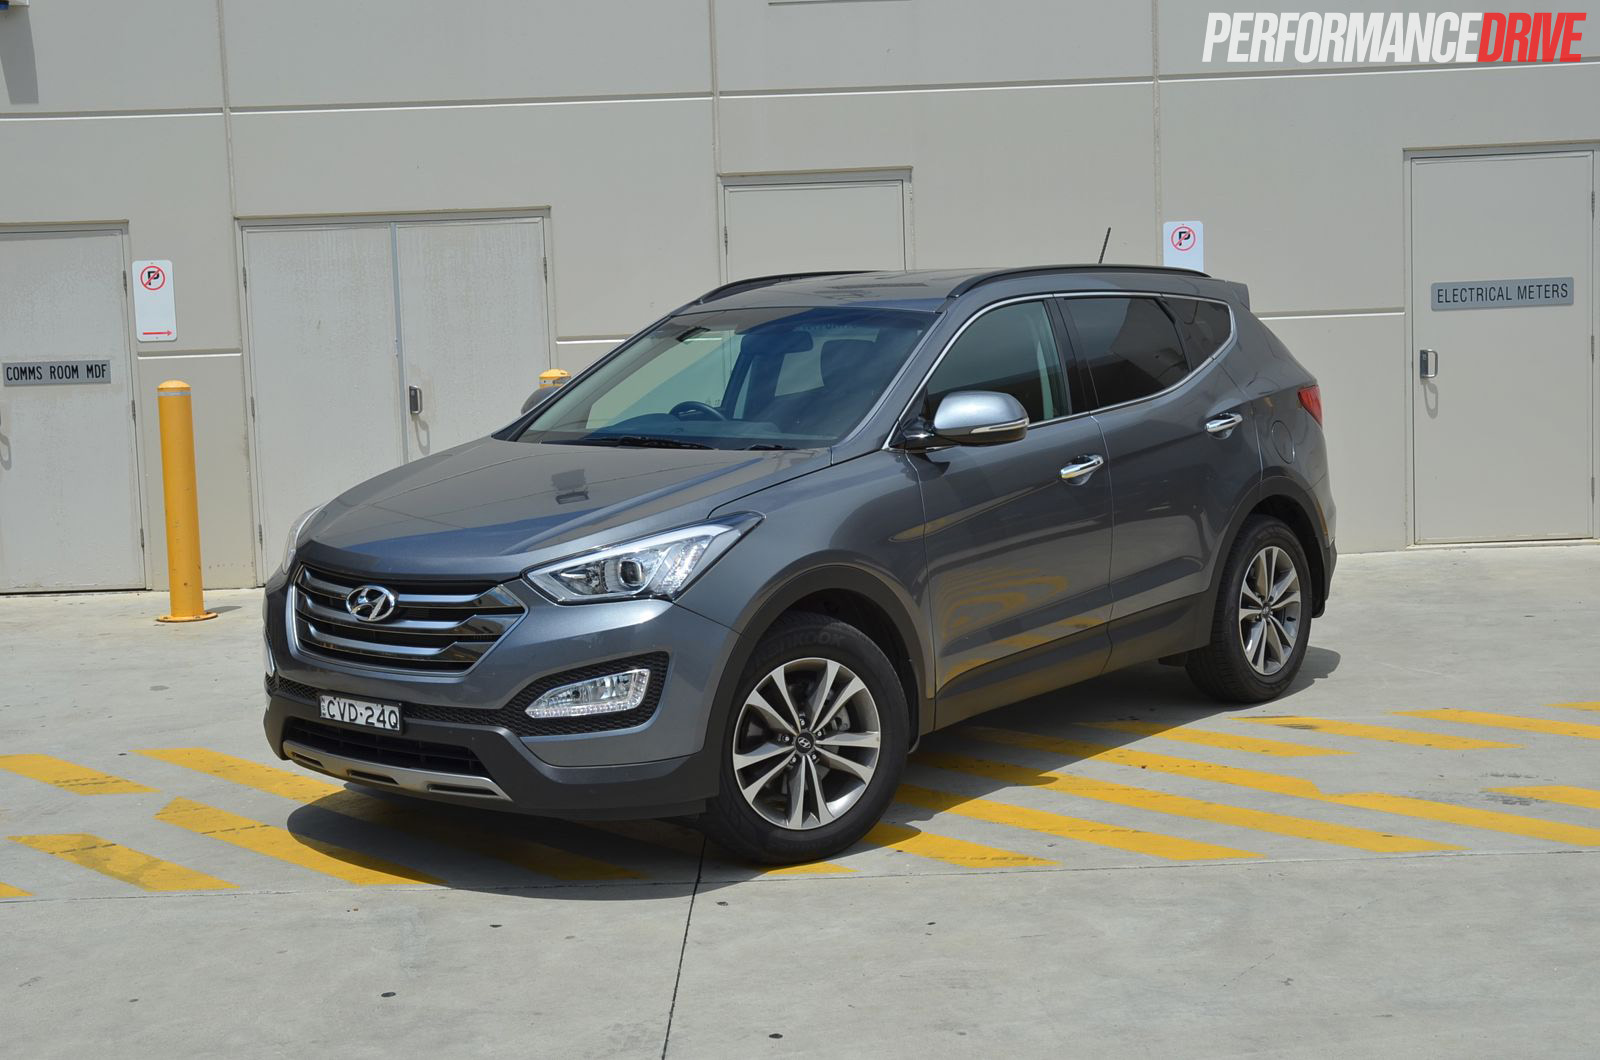 2015 Hyundai Santa Fe Elite review (video)